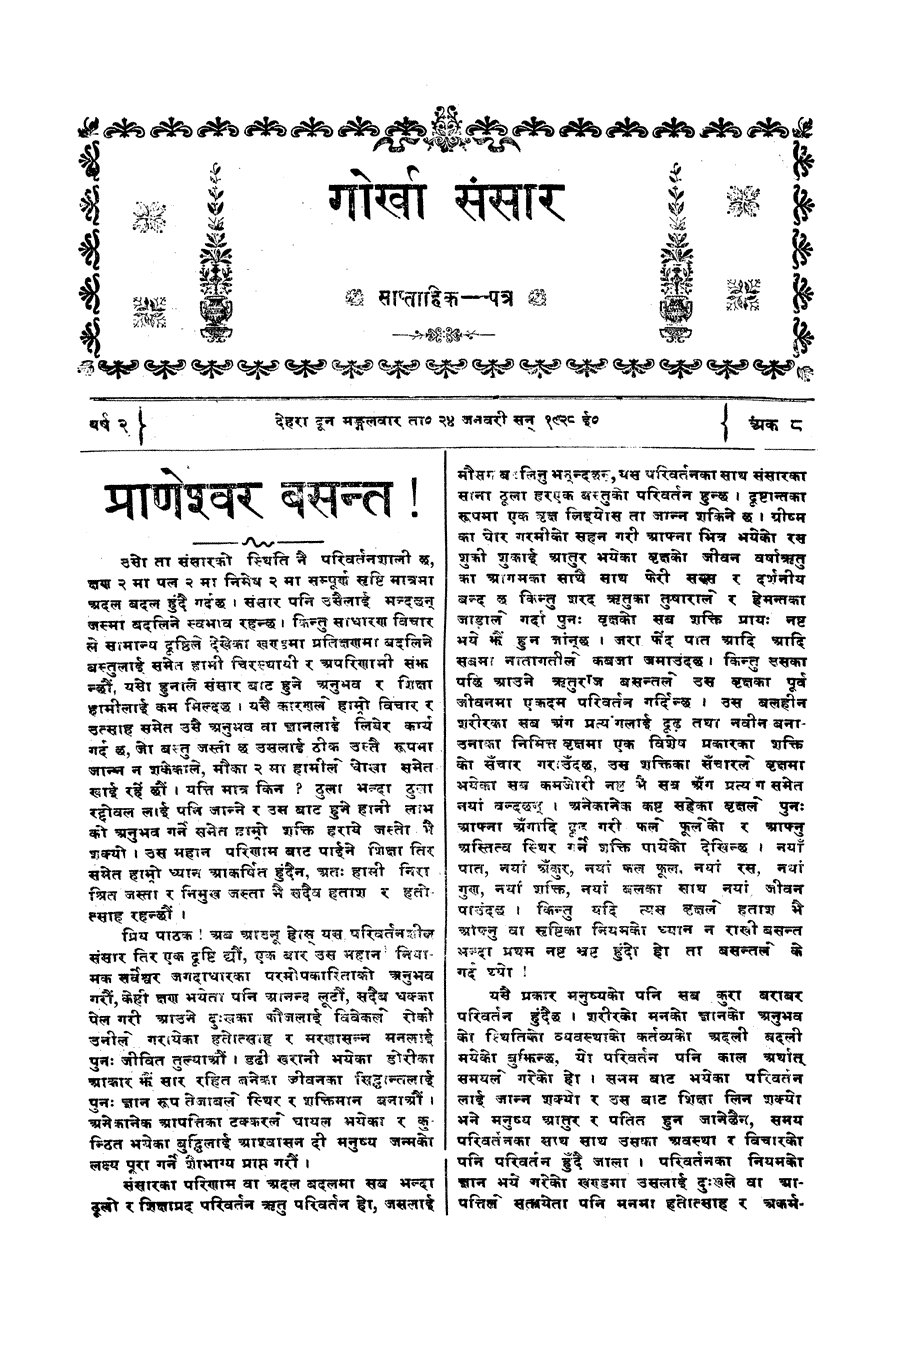 Gorkha Sansar, 31 Jan 1928, page 3